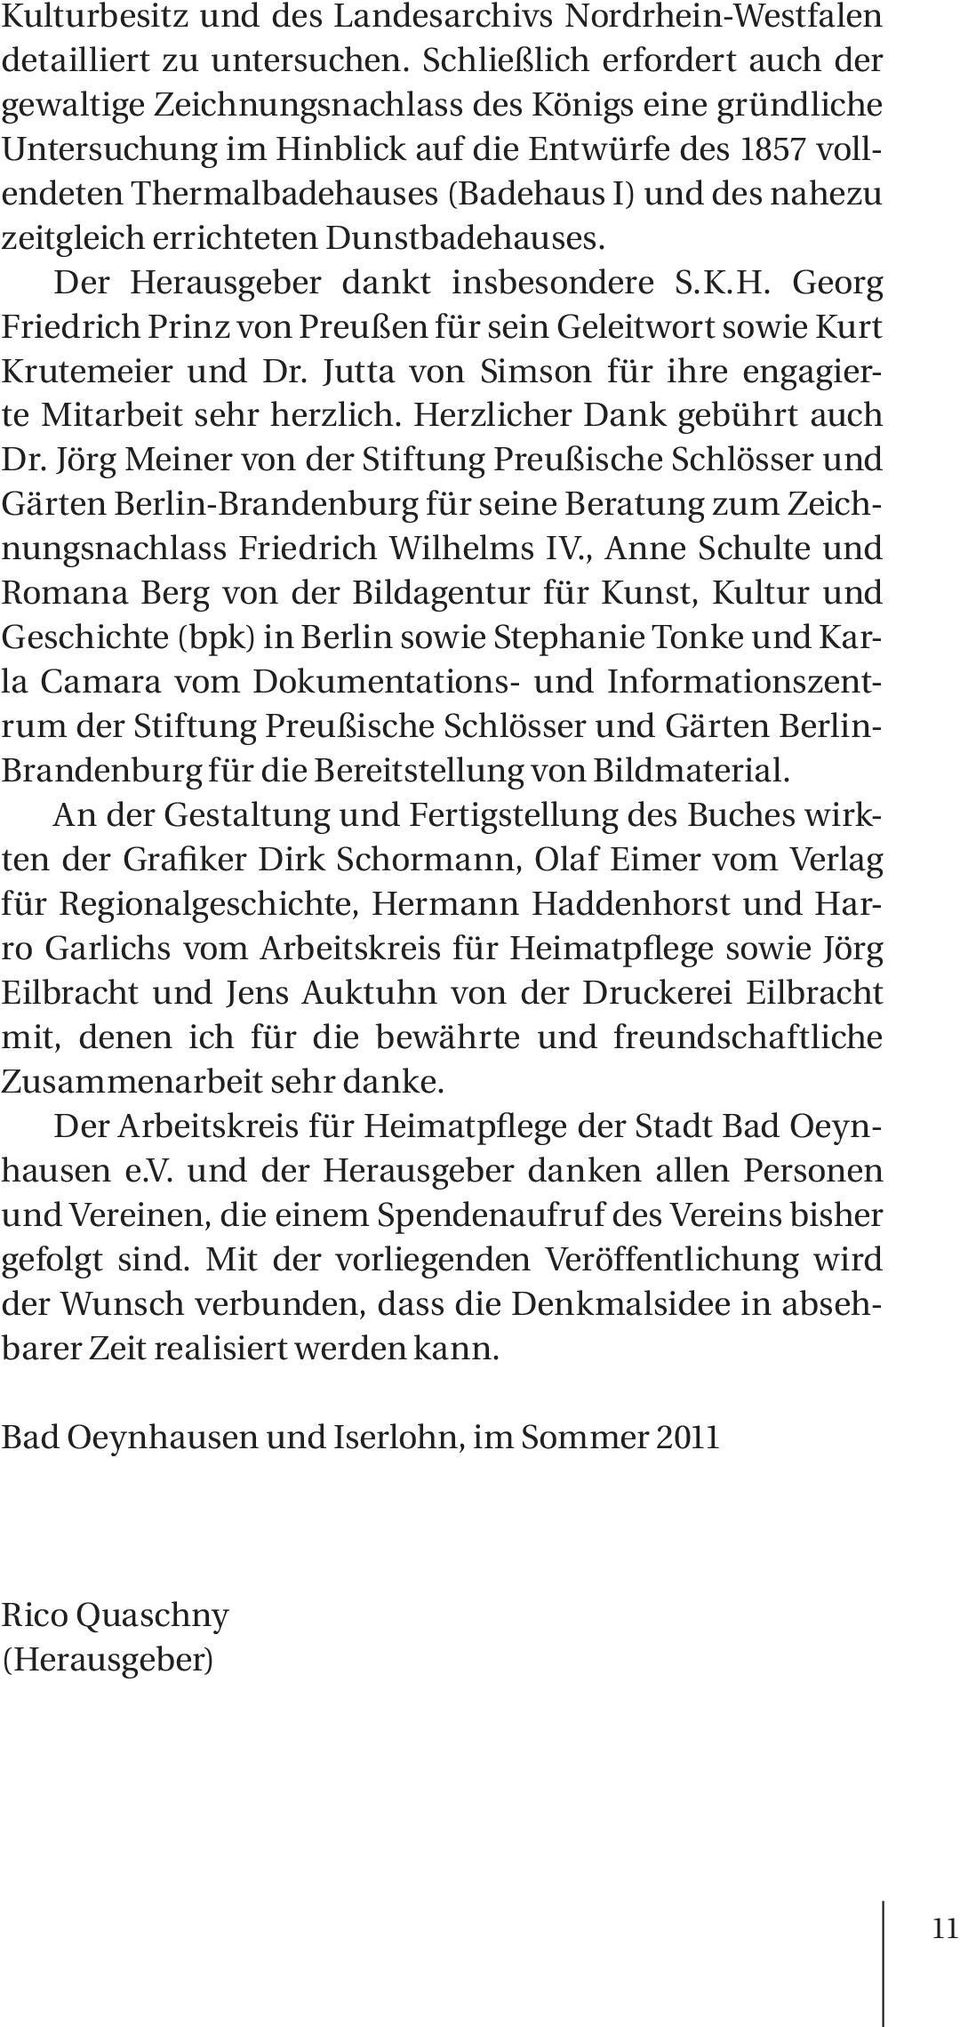 zeitgleich errichteten Dunstbadehauses. Der Herausgeber dankt insbesondere S.K.H. Georg Friedrich Prinz von Preußen für sein Geleitwort sowie Kurt Krutemeier und Dr.